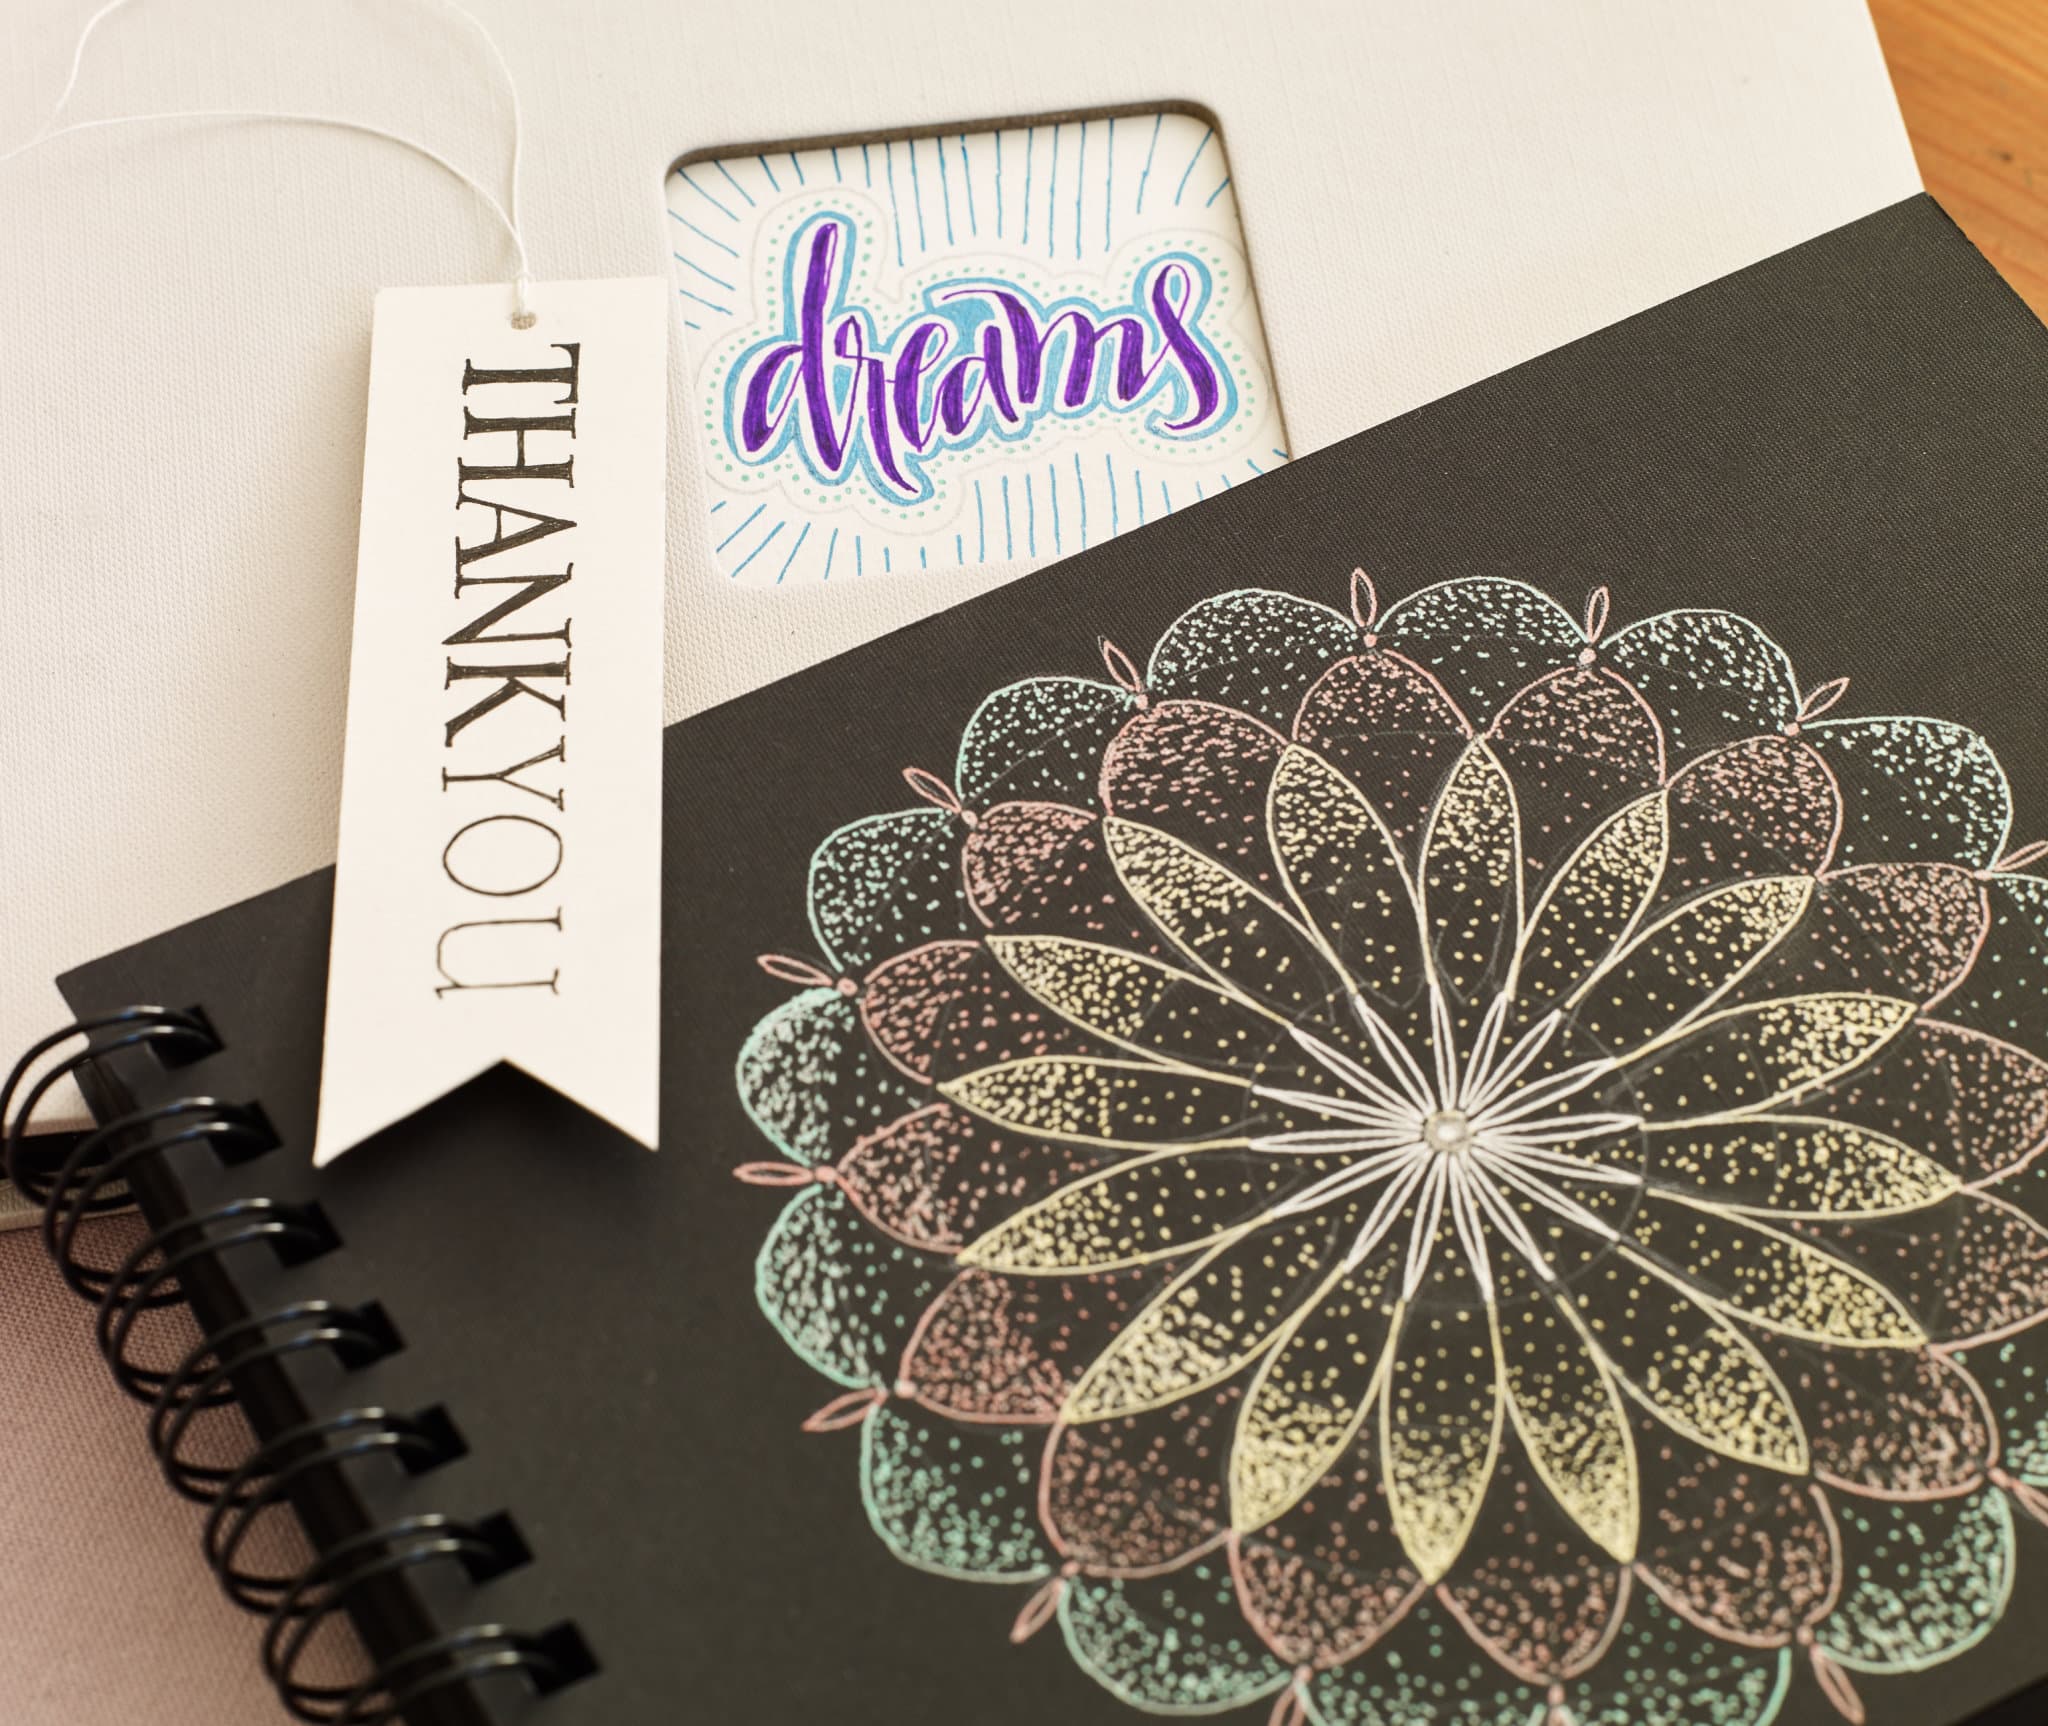 Ein kunstvolles schwarzes Notizbuch mit einem aufwendigen Mandala-Design in Metallic-Farben auf dem Einband, gepaart mit Tags mit der Aufschrift „Danke“ und „Träume“, die Gefühle der Dankbarkeit und Inspiration hervorrufen, von edding 2185 Gelroller.